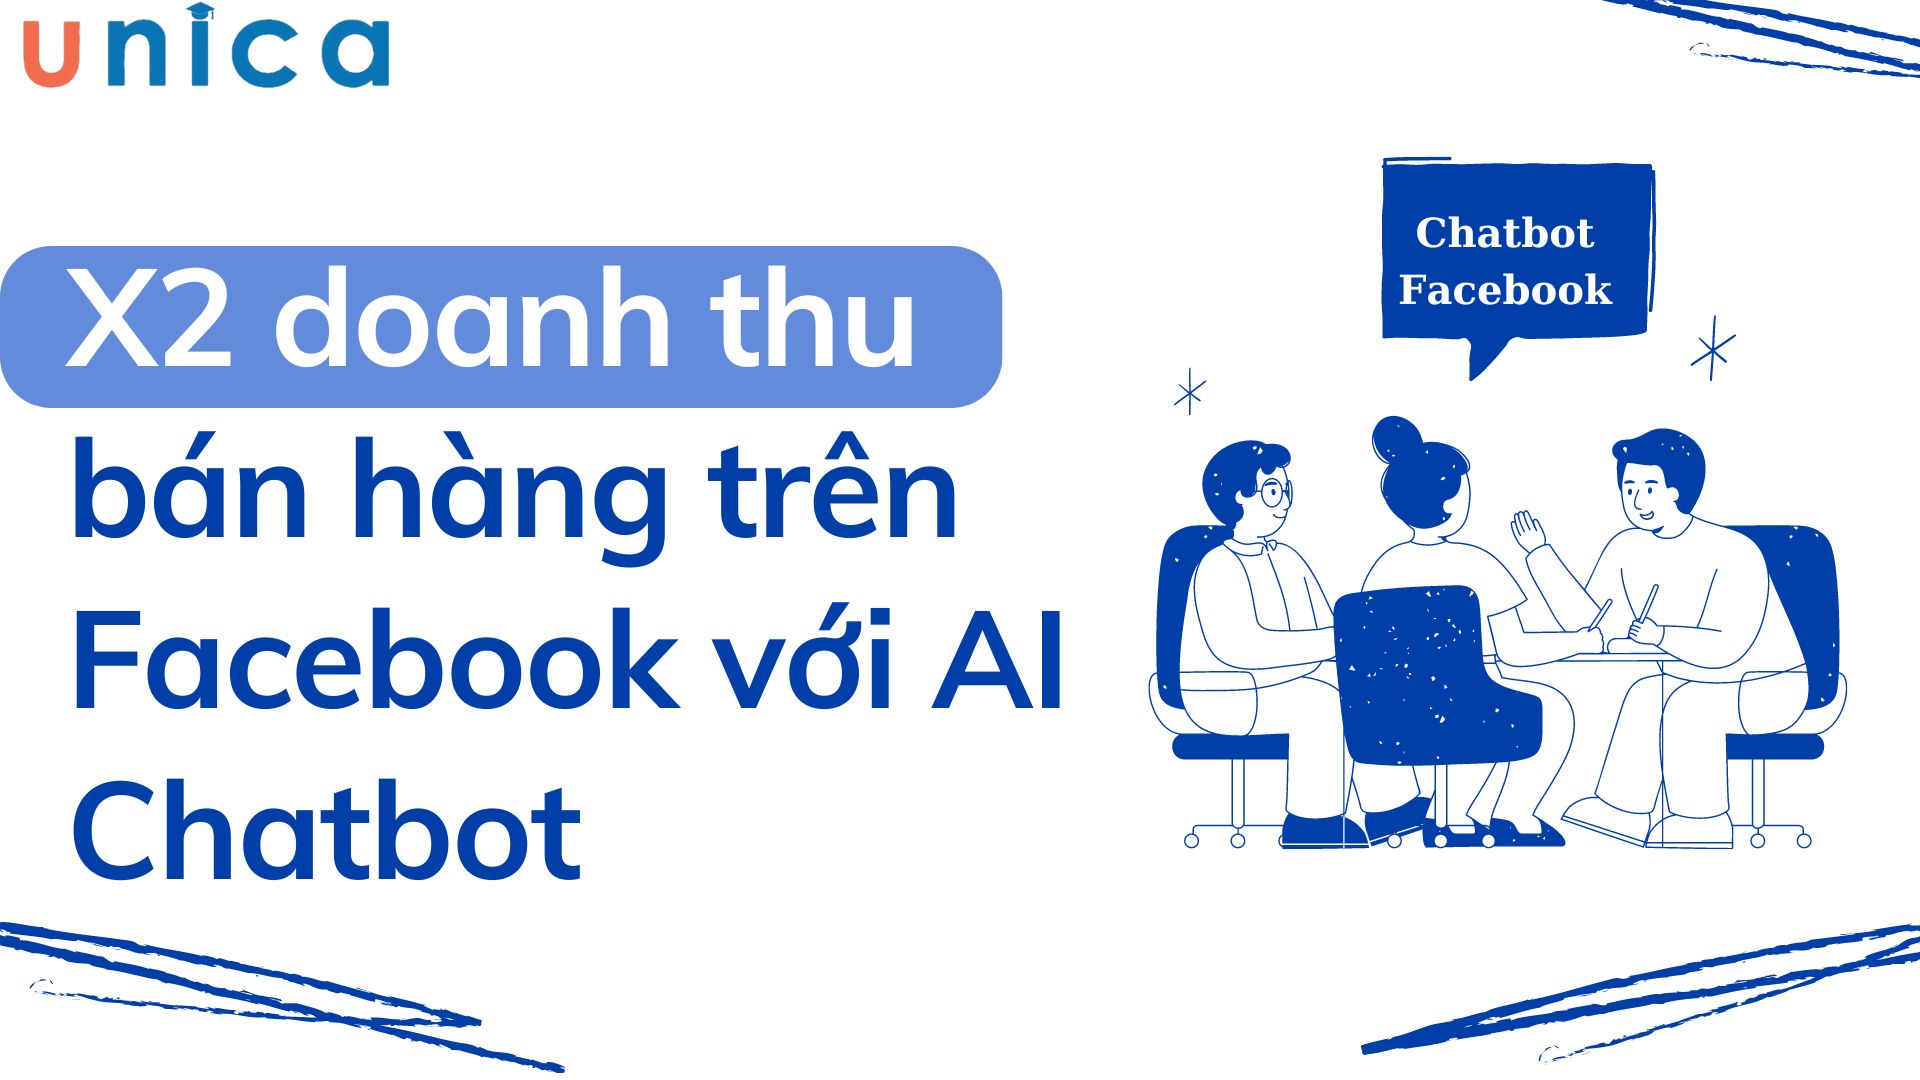 Minh Hiếu X2 doanh thu bán hàng trên Facebook nhờ AI Chatbot tự động